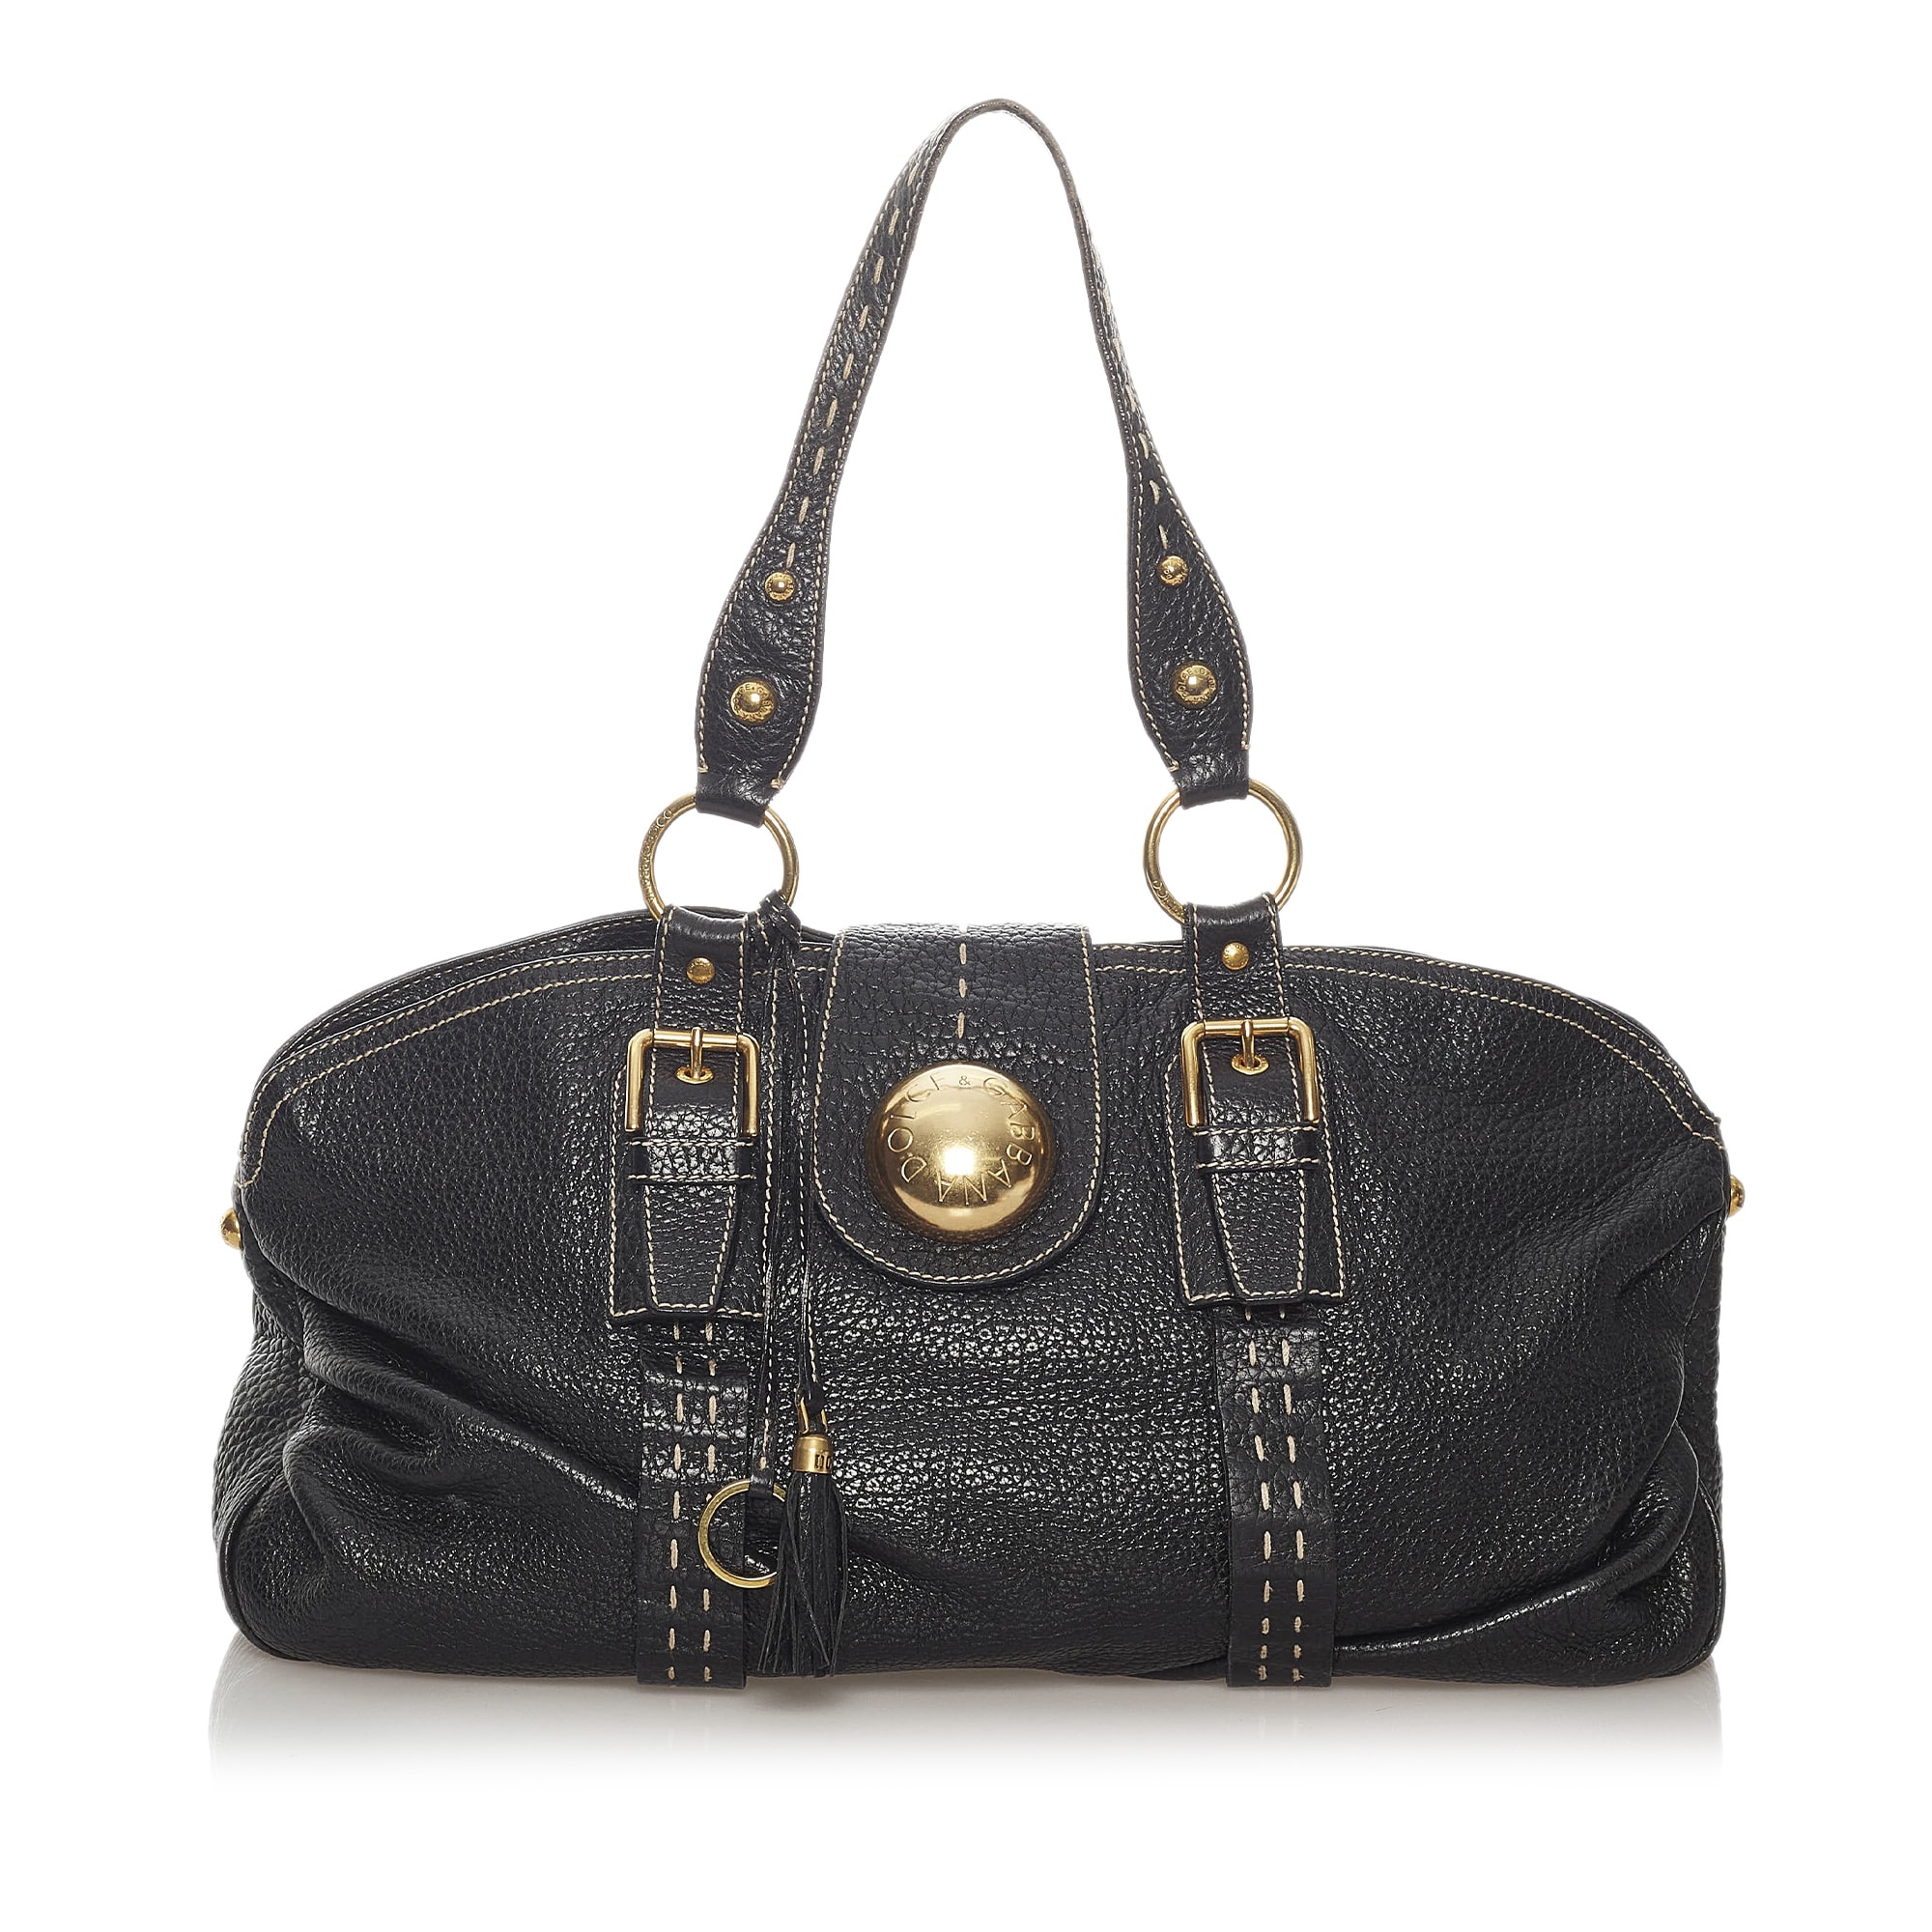 Dolce&gabbana Leather Shoulder Bag, ONESIZE, black